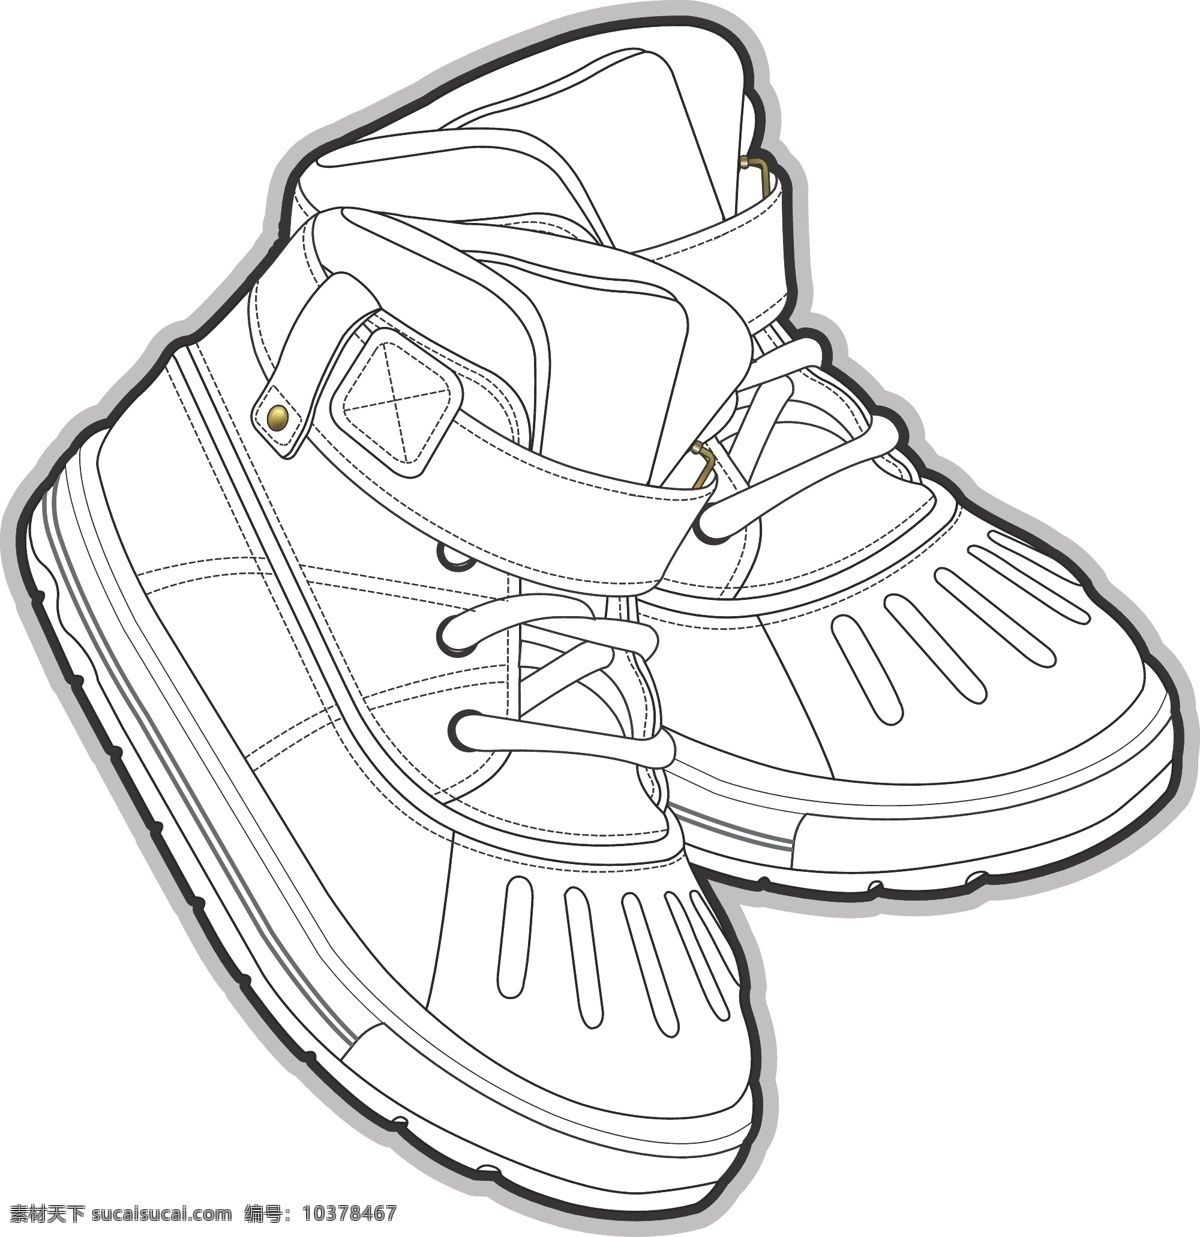 休闲鞋 白海 服装 白色 线 稿 矢量 秋季 儿童服装设计 可爱 彩色 手绘 保暖 线条 源文件